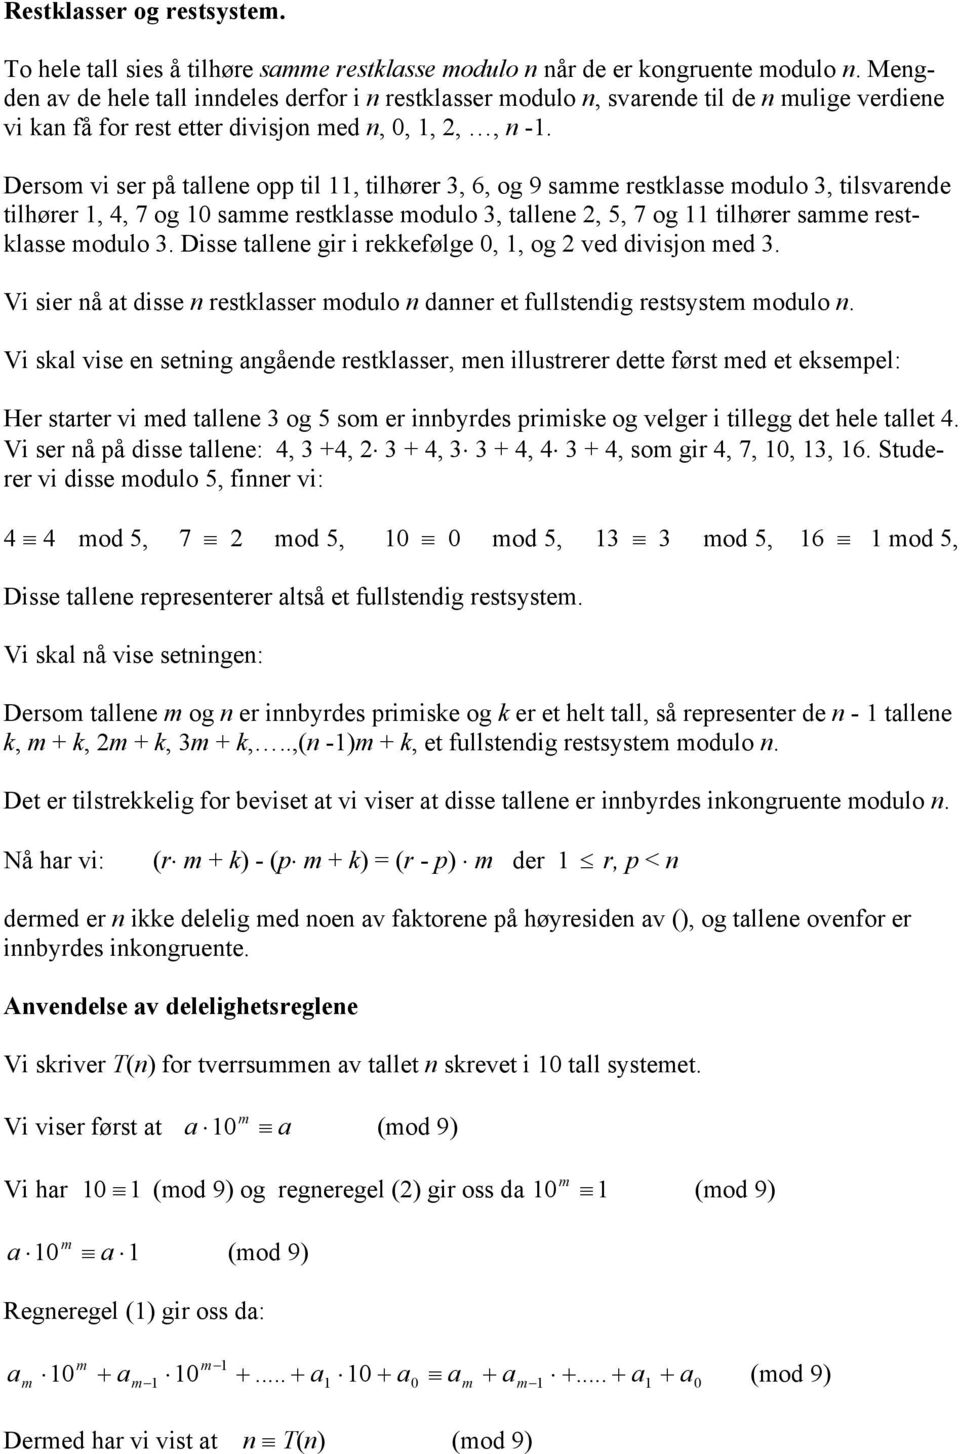 Desom vi se å tallee o til, tilhøe 3, 6, og 9 samme estklasse modulo 3, tilsvaede tilhøe, 4, 7 og 0 samme estklasse modulo 3, tallee, 5, 7 og tilhøe samme estklasse modulo 3.